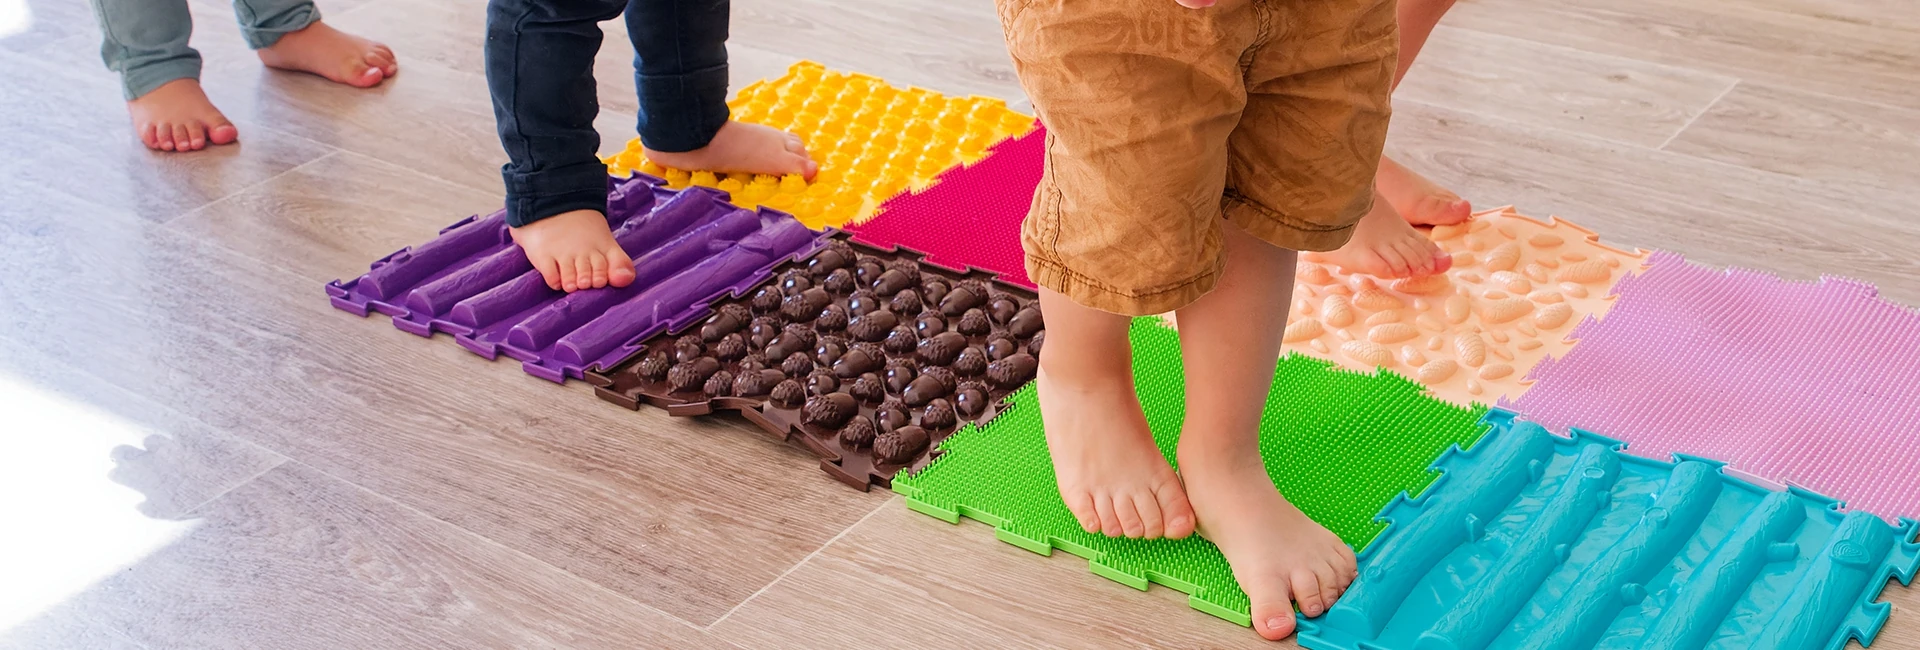 Des enfants pieds nus marchent sur des plaques de différentes textures pour appréhender différentes sensations